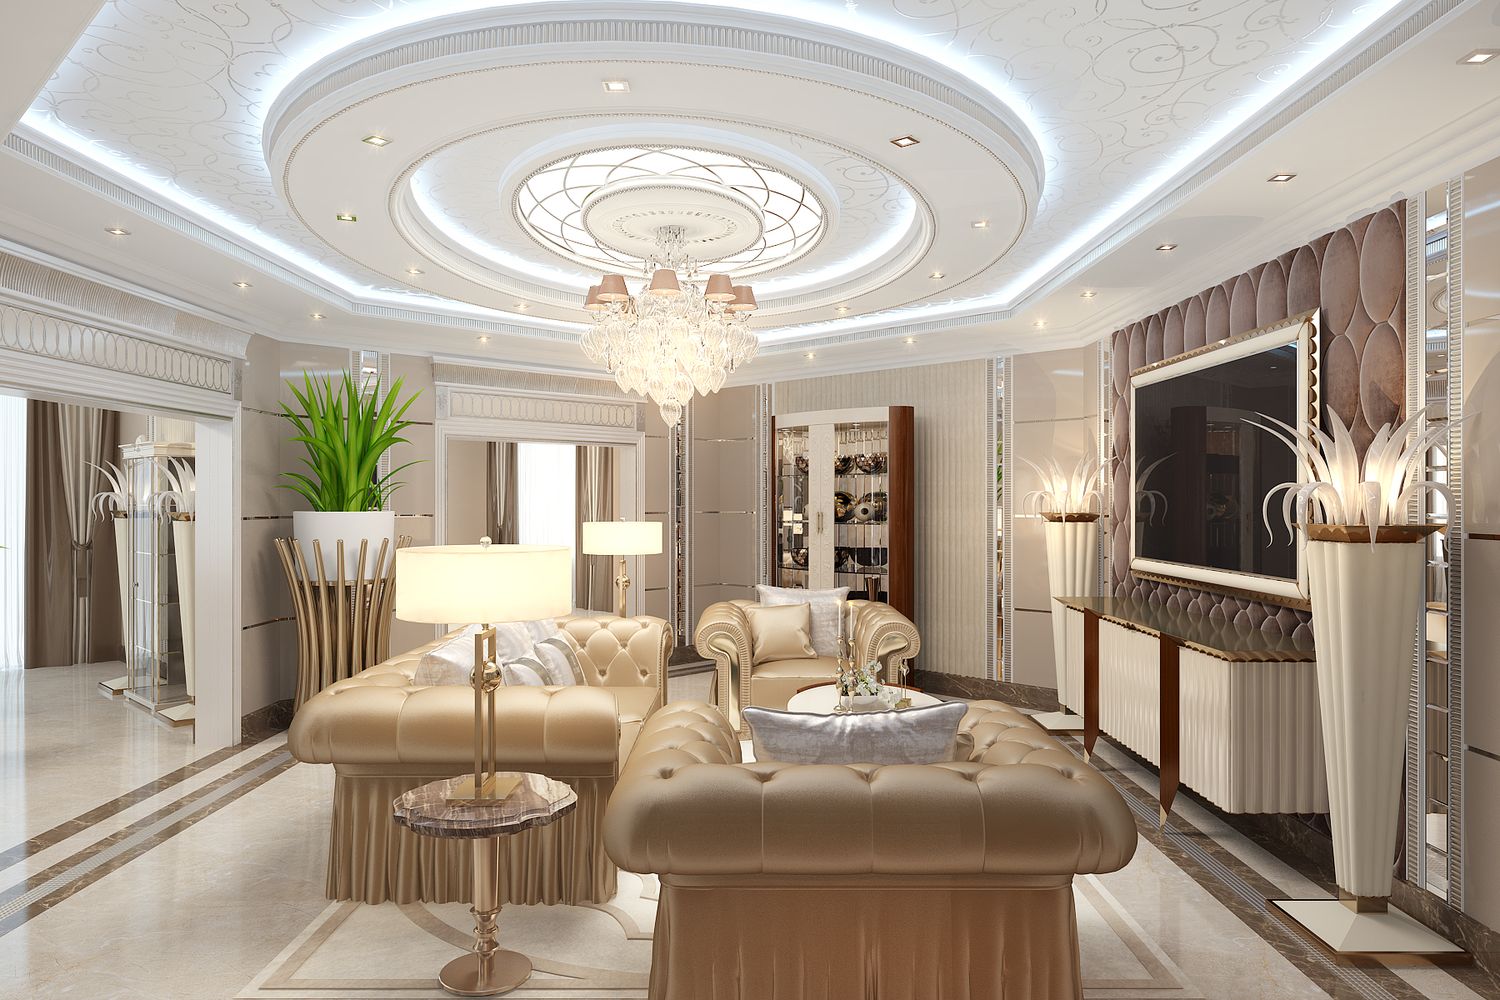 LUXURY ANTONOVICH DESIGN UAE: Living Room Decoration Ideas ...